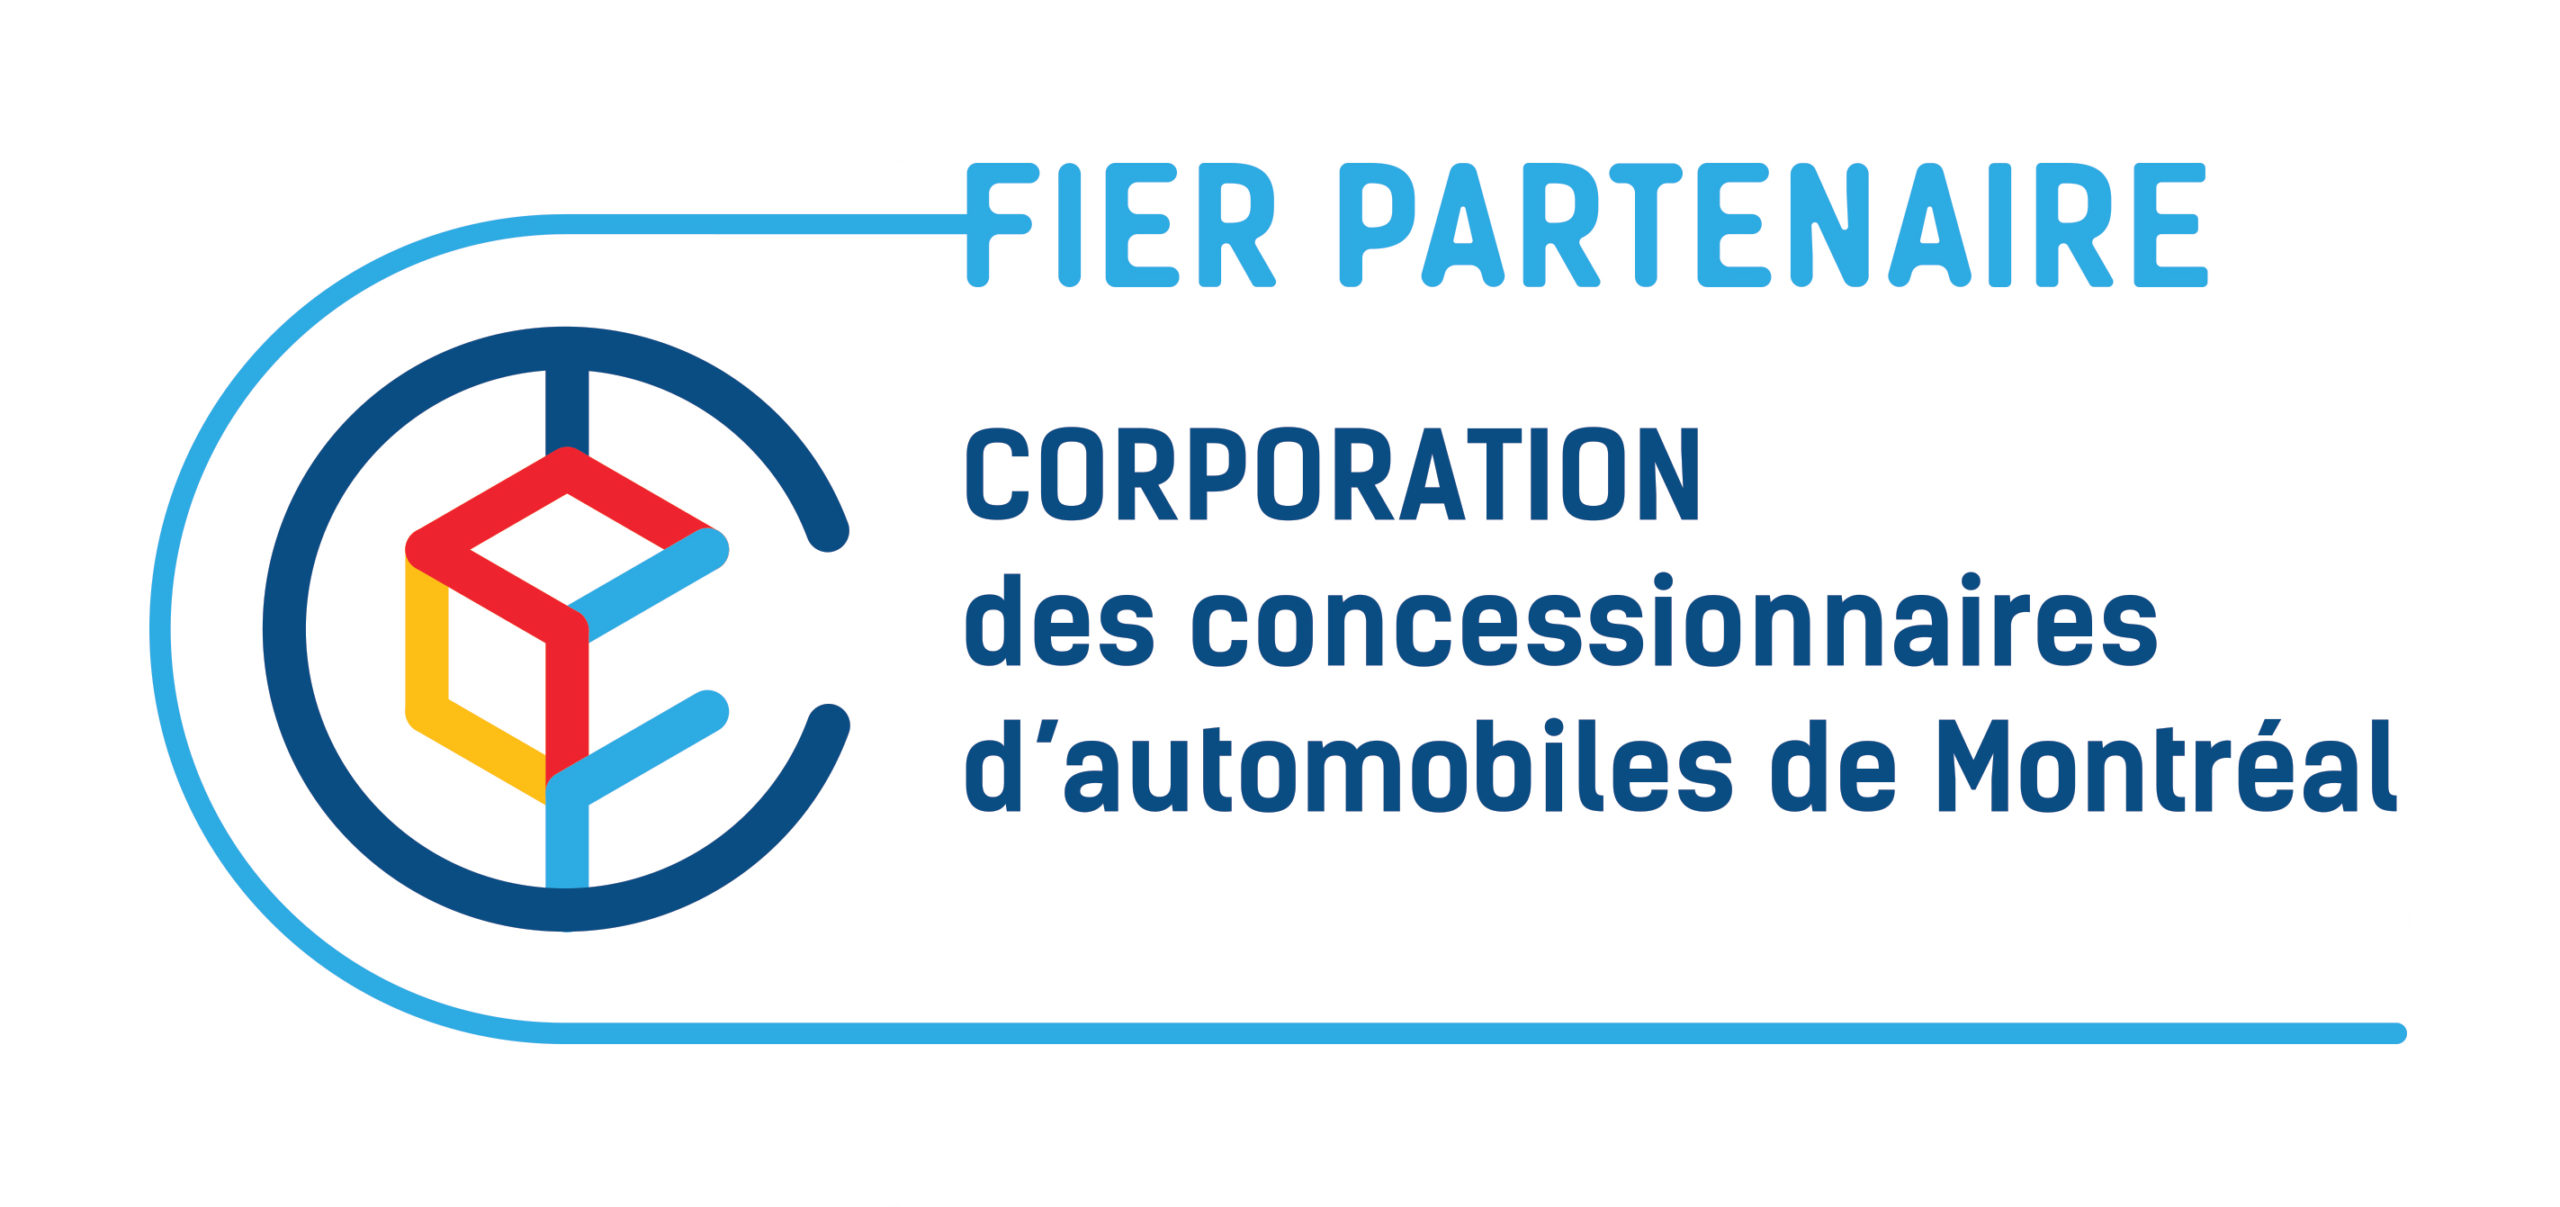 La Corporation des concessionnaires automobiles de Montréal